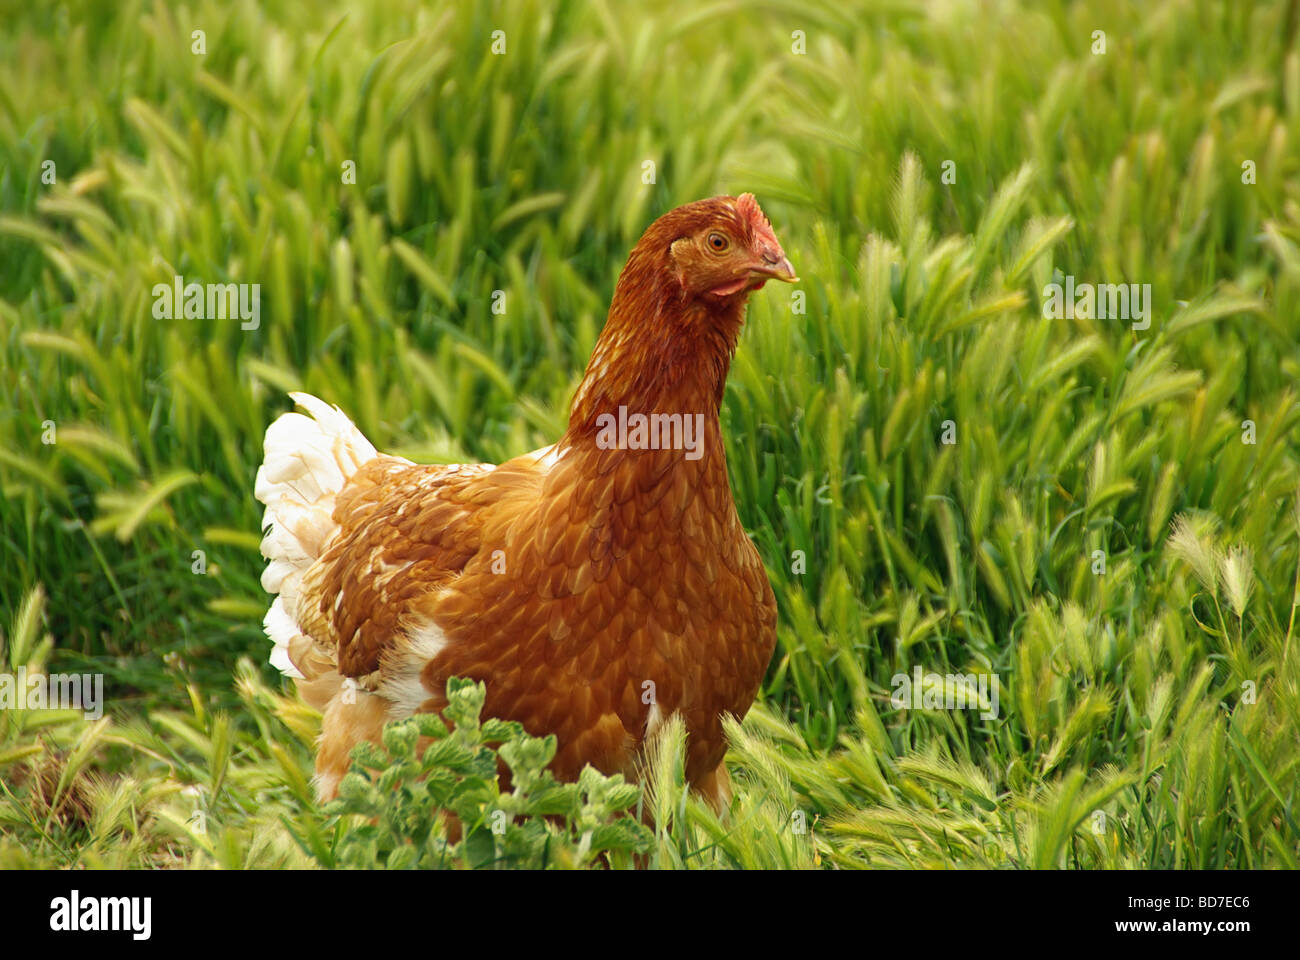 Huhn pollo 05 Foto de stock